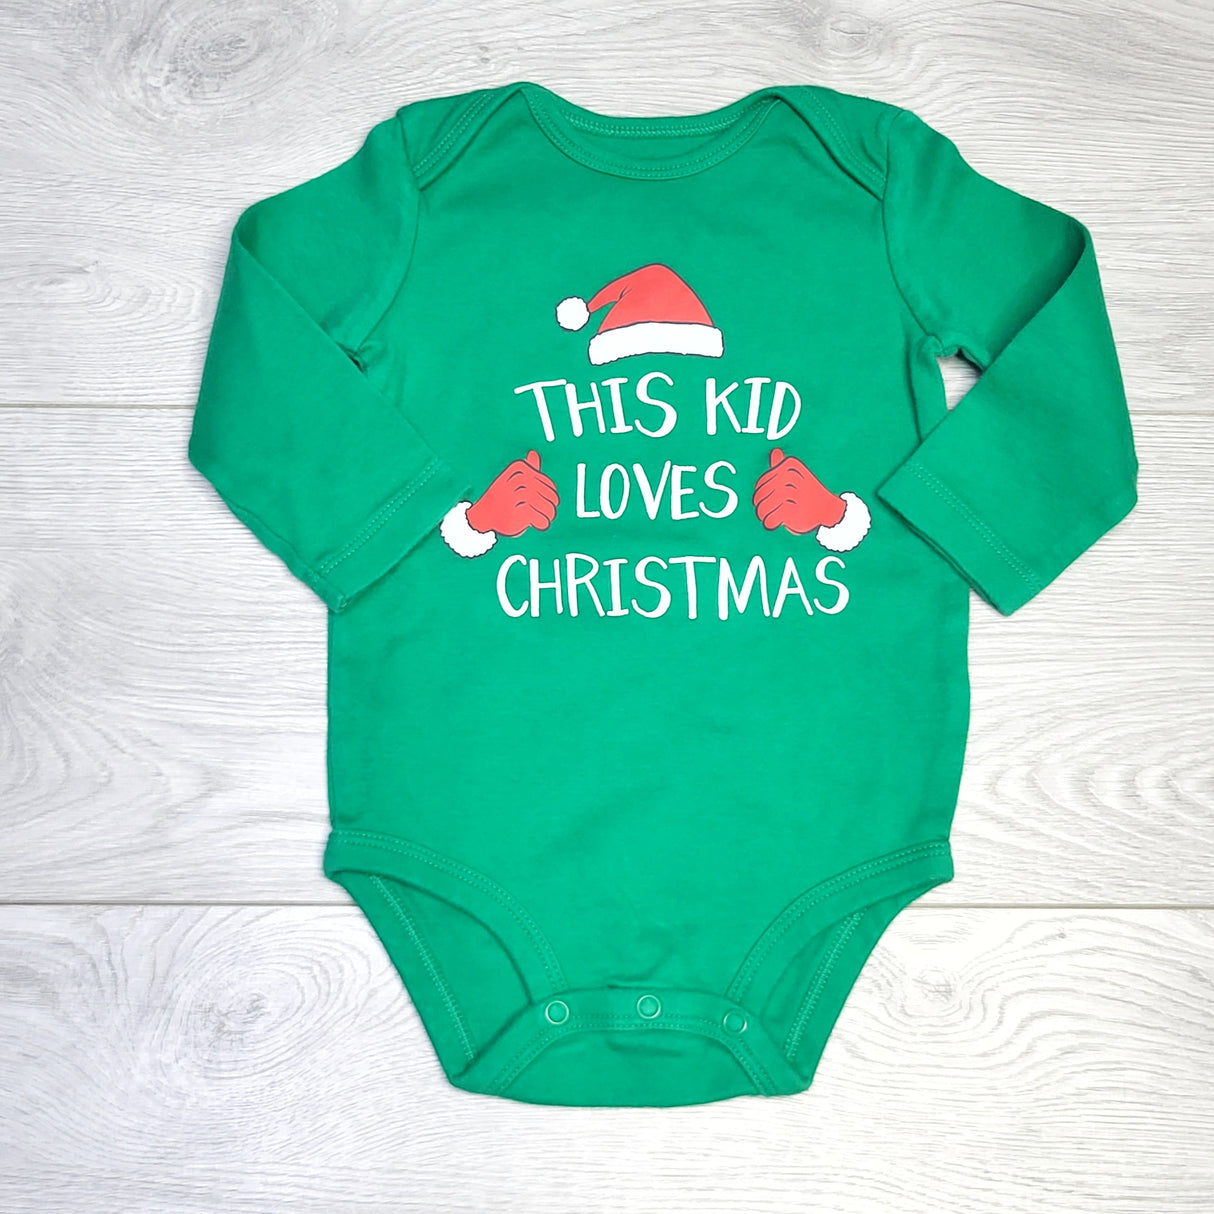 KJHN1 - Carters green "This Kid Loves Christmas" bodysuit. Size 12 months